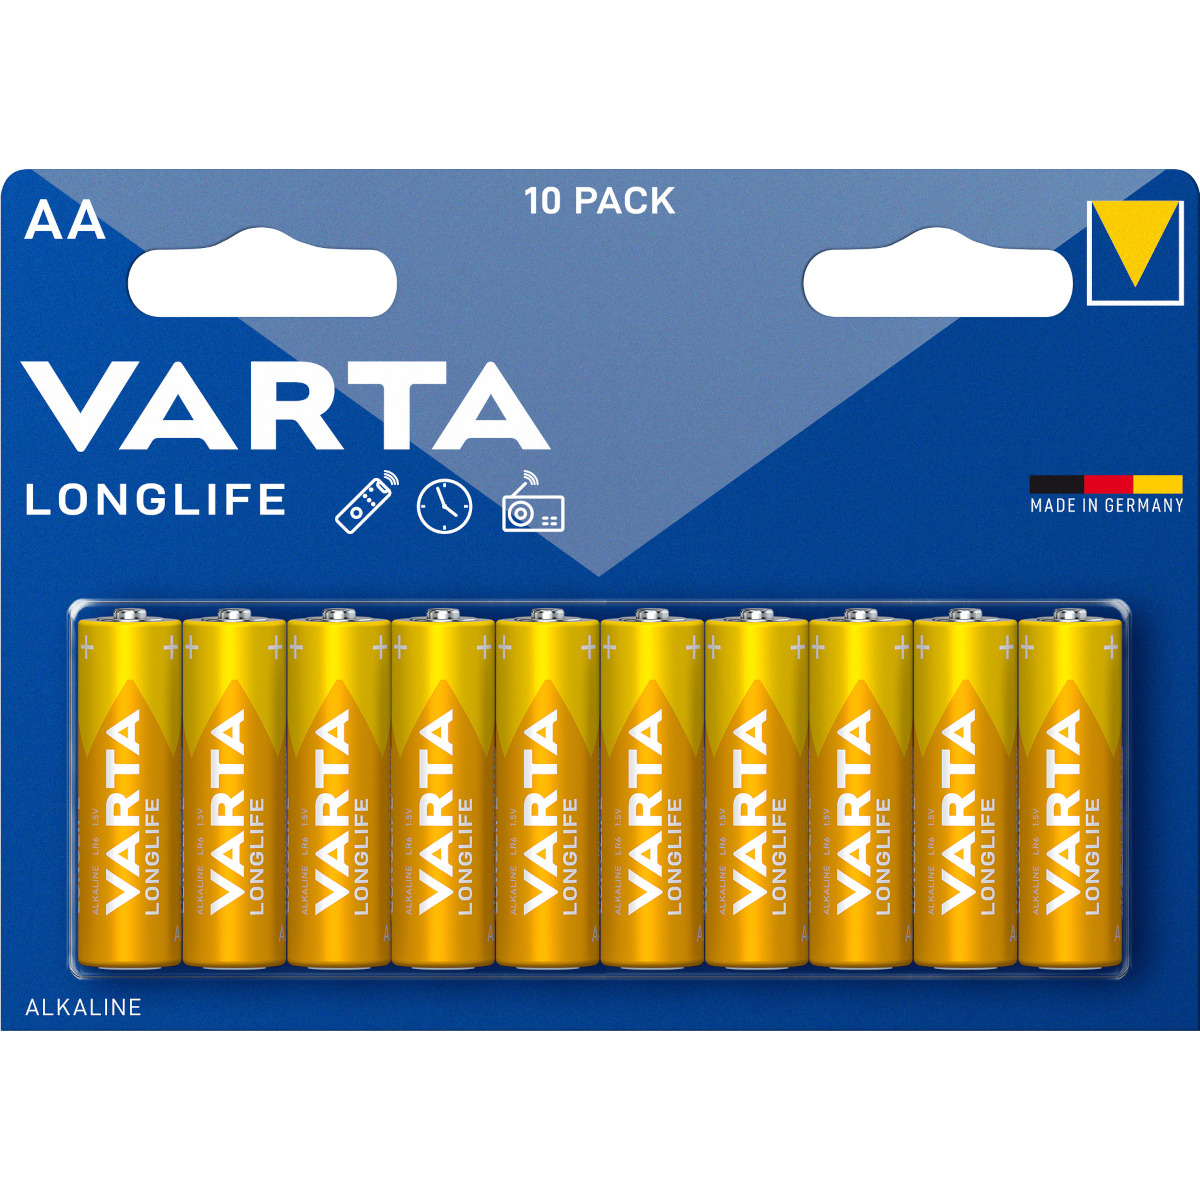 Batteriefach für 10 AA-Batterien, 15V